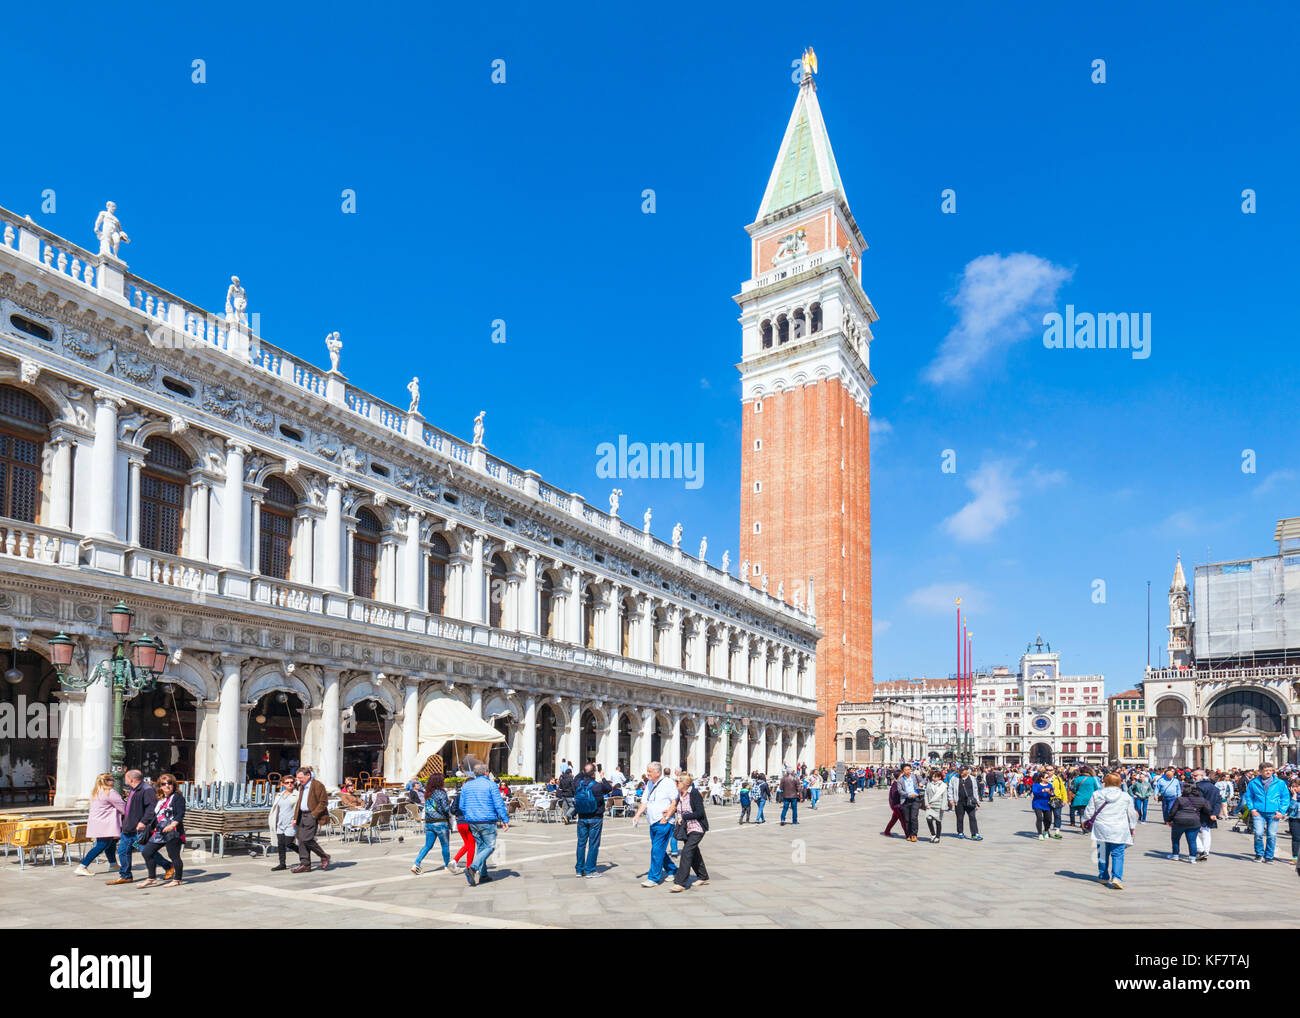 Venedig Italien Venedig besetzt Massen von Touristen, die in Venedig, Riva degli Schiavoni Promenade in der Nähe von Dogenpalast und Campanile Venedig Italien EU Europa Stockfoto